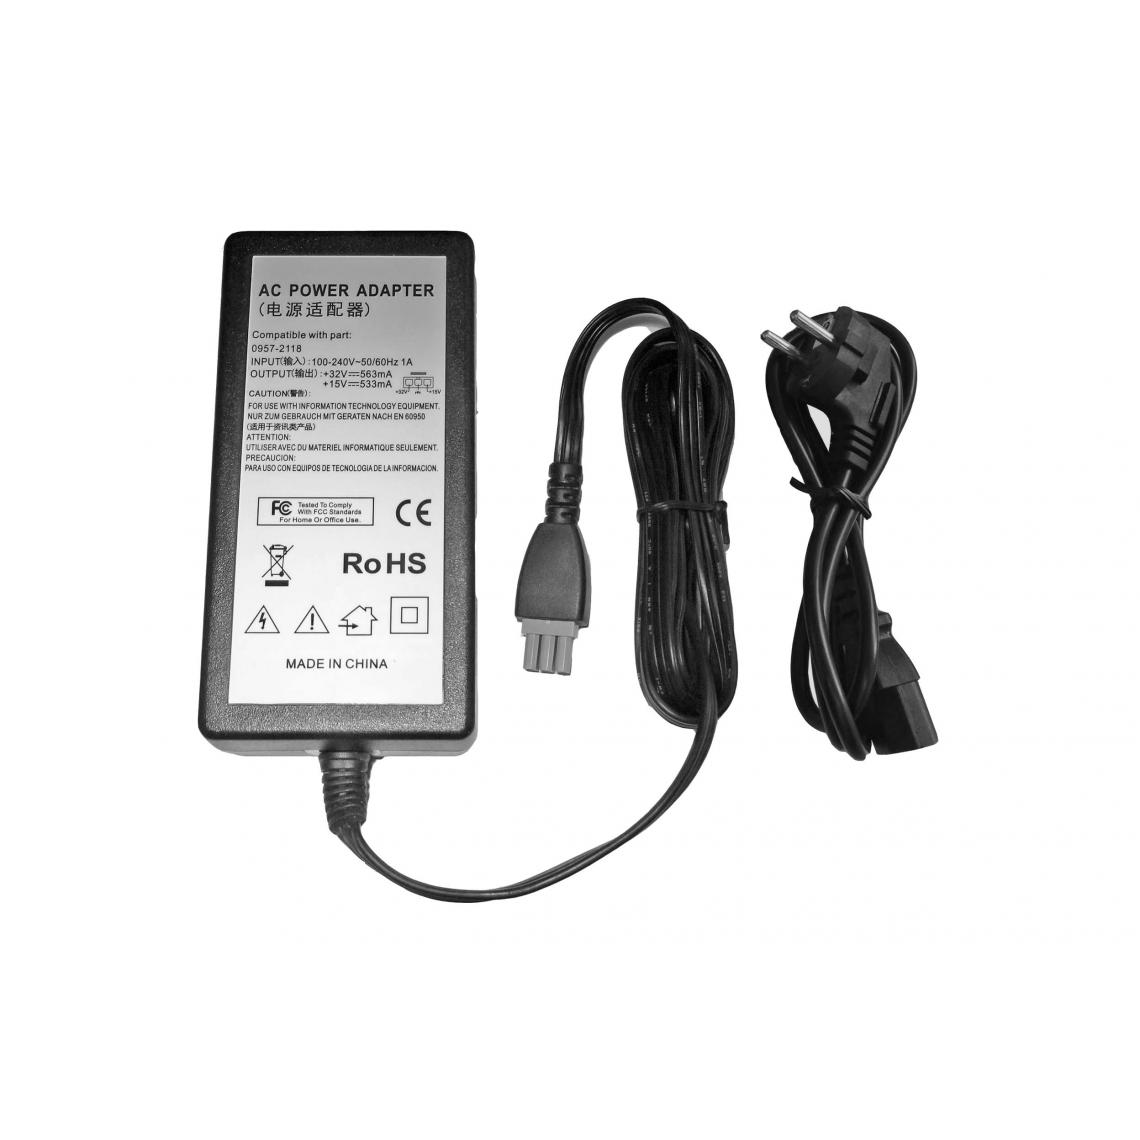 Vhbw - vhbw Imprimante Adaptateur bloc d'alimentation Câble d'alimentation Chargeur compatible avec HP Deskjet 4315, 4355 imprimante - 0.533 / 0.563A - Accessoires alimentation